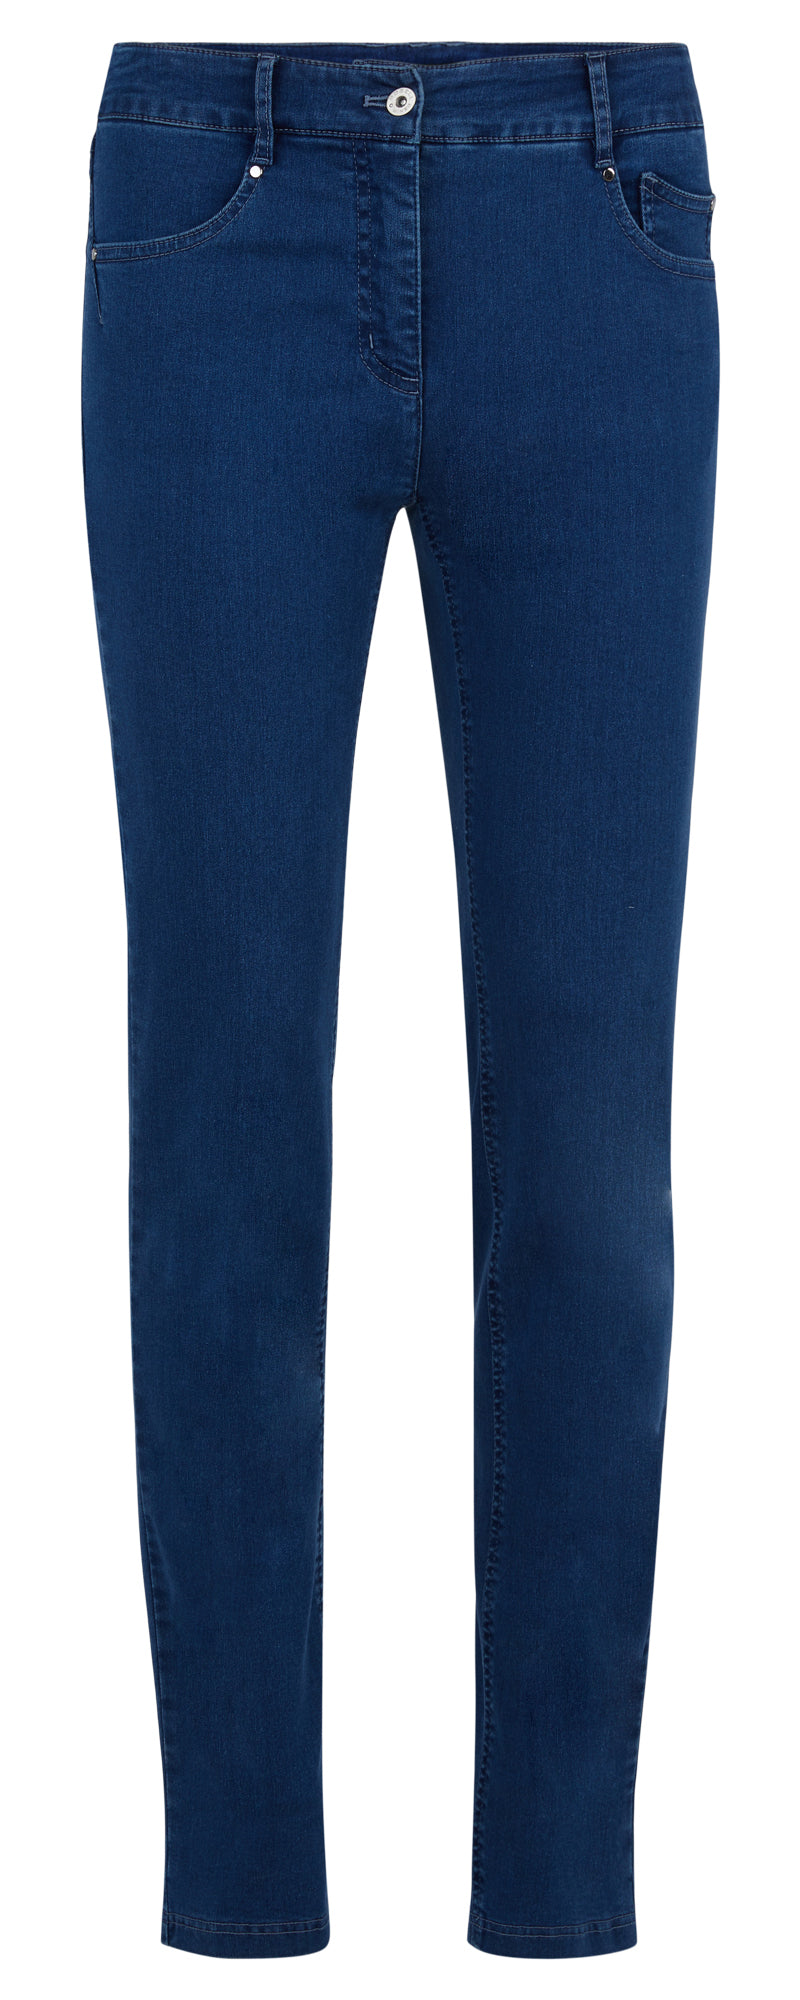 Robell Elena Jeans in Denim Blue